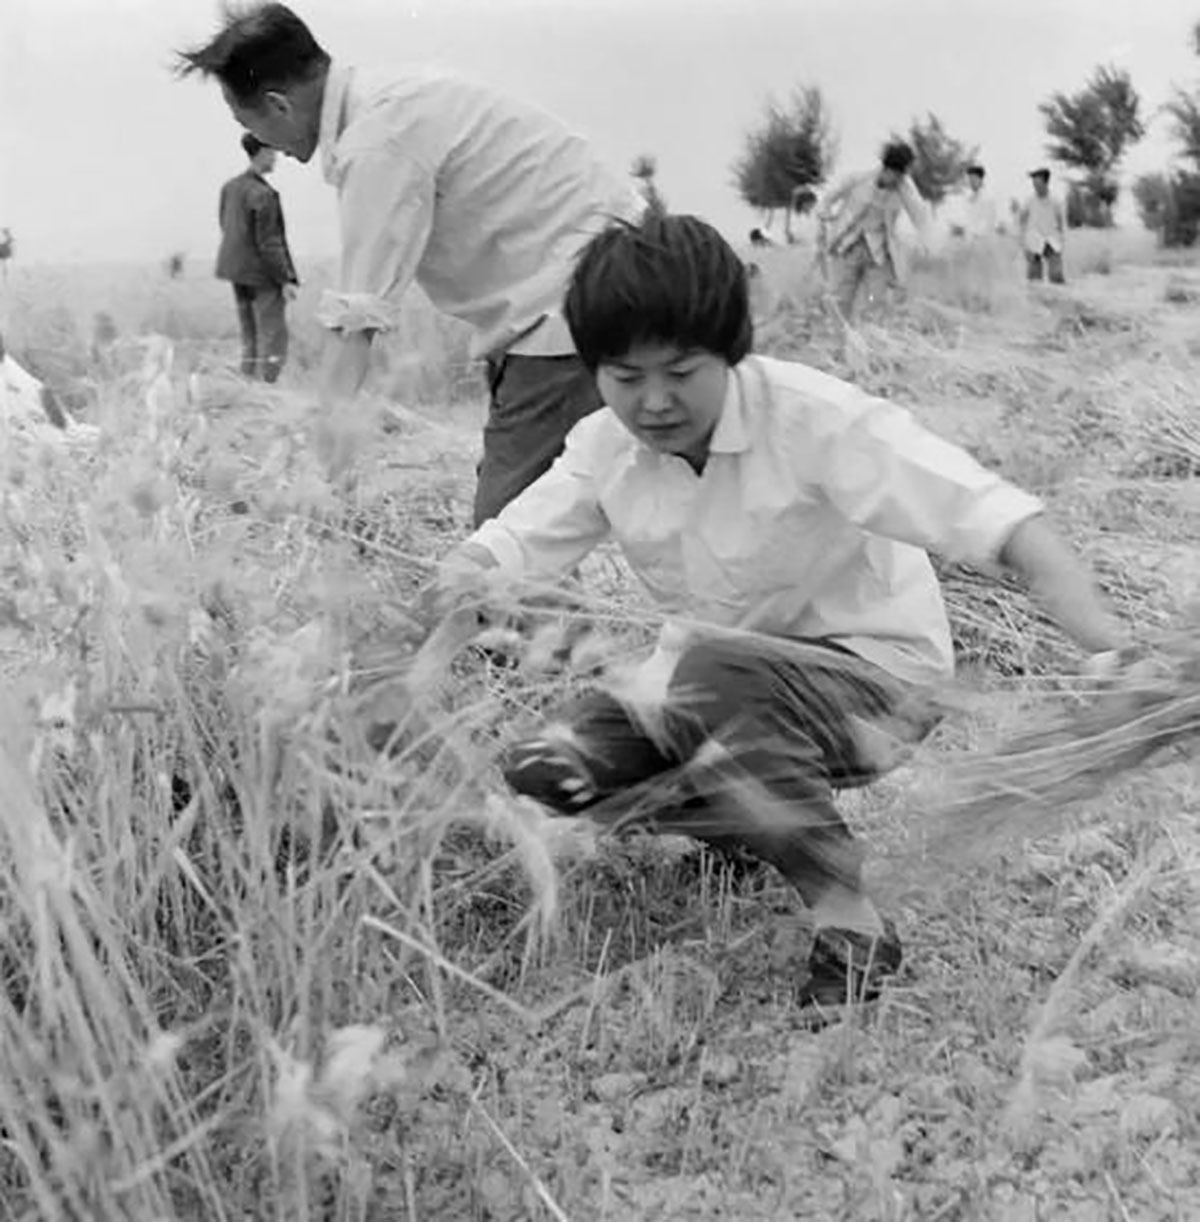 樊錦詩1963年正式進入敦煌研究院工作，當年除了保育石窟，還要兼顧周邊植樹造林，因為水土流失嚴重，會對石窟造成嚴重的侵害，研究員除草植林也是日常工作之一。